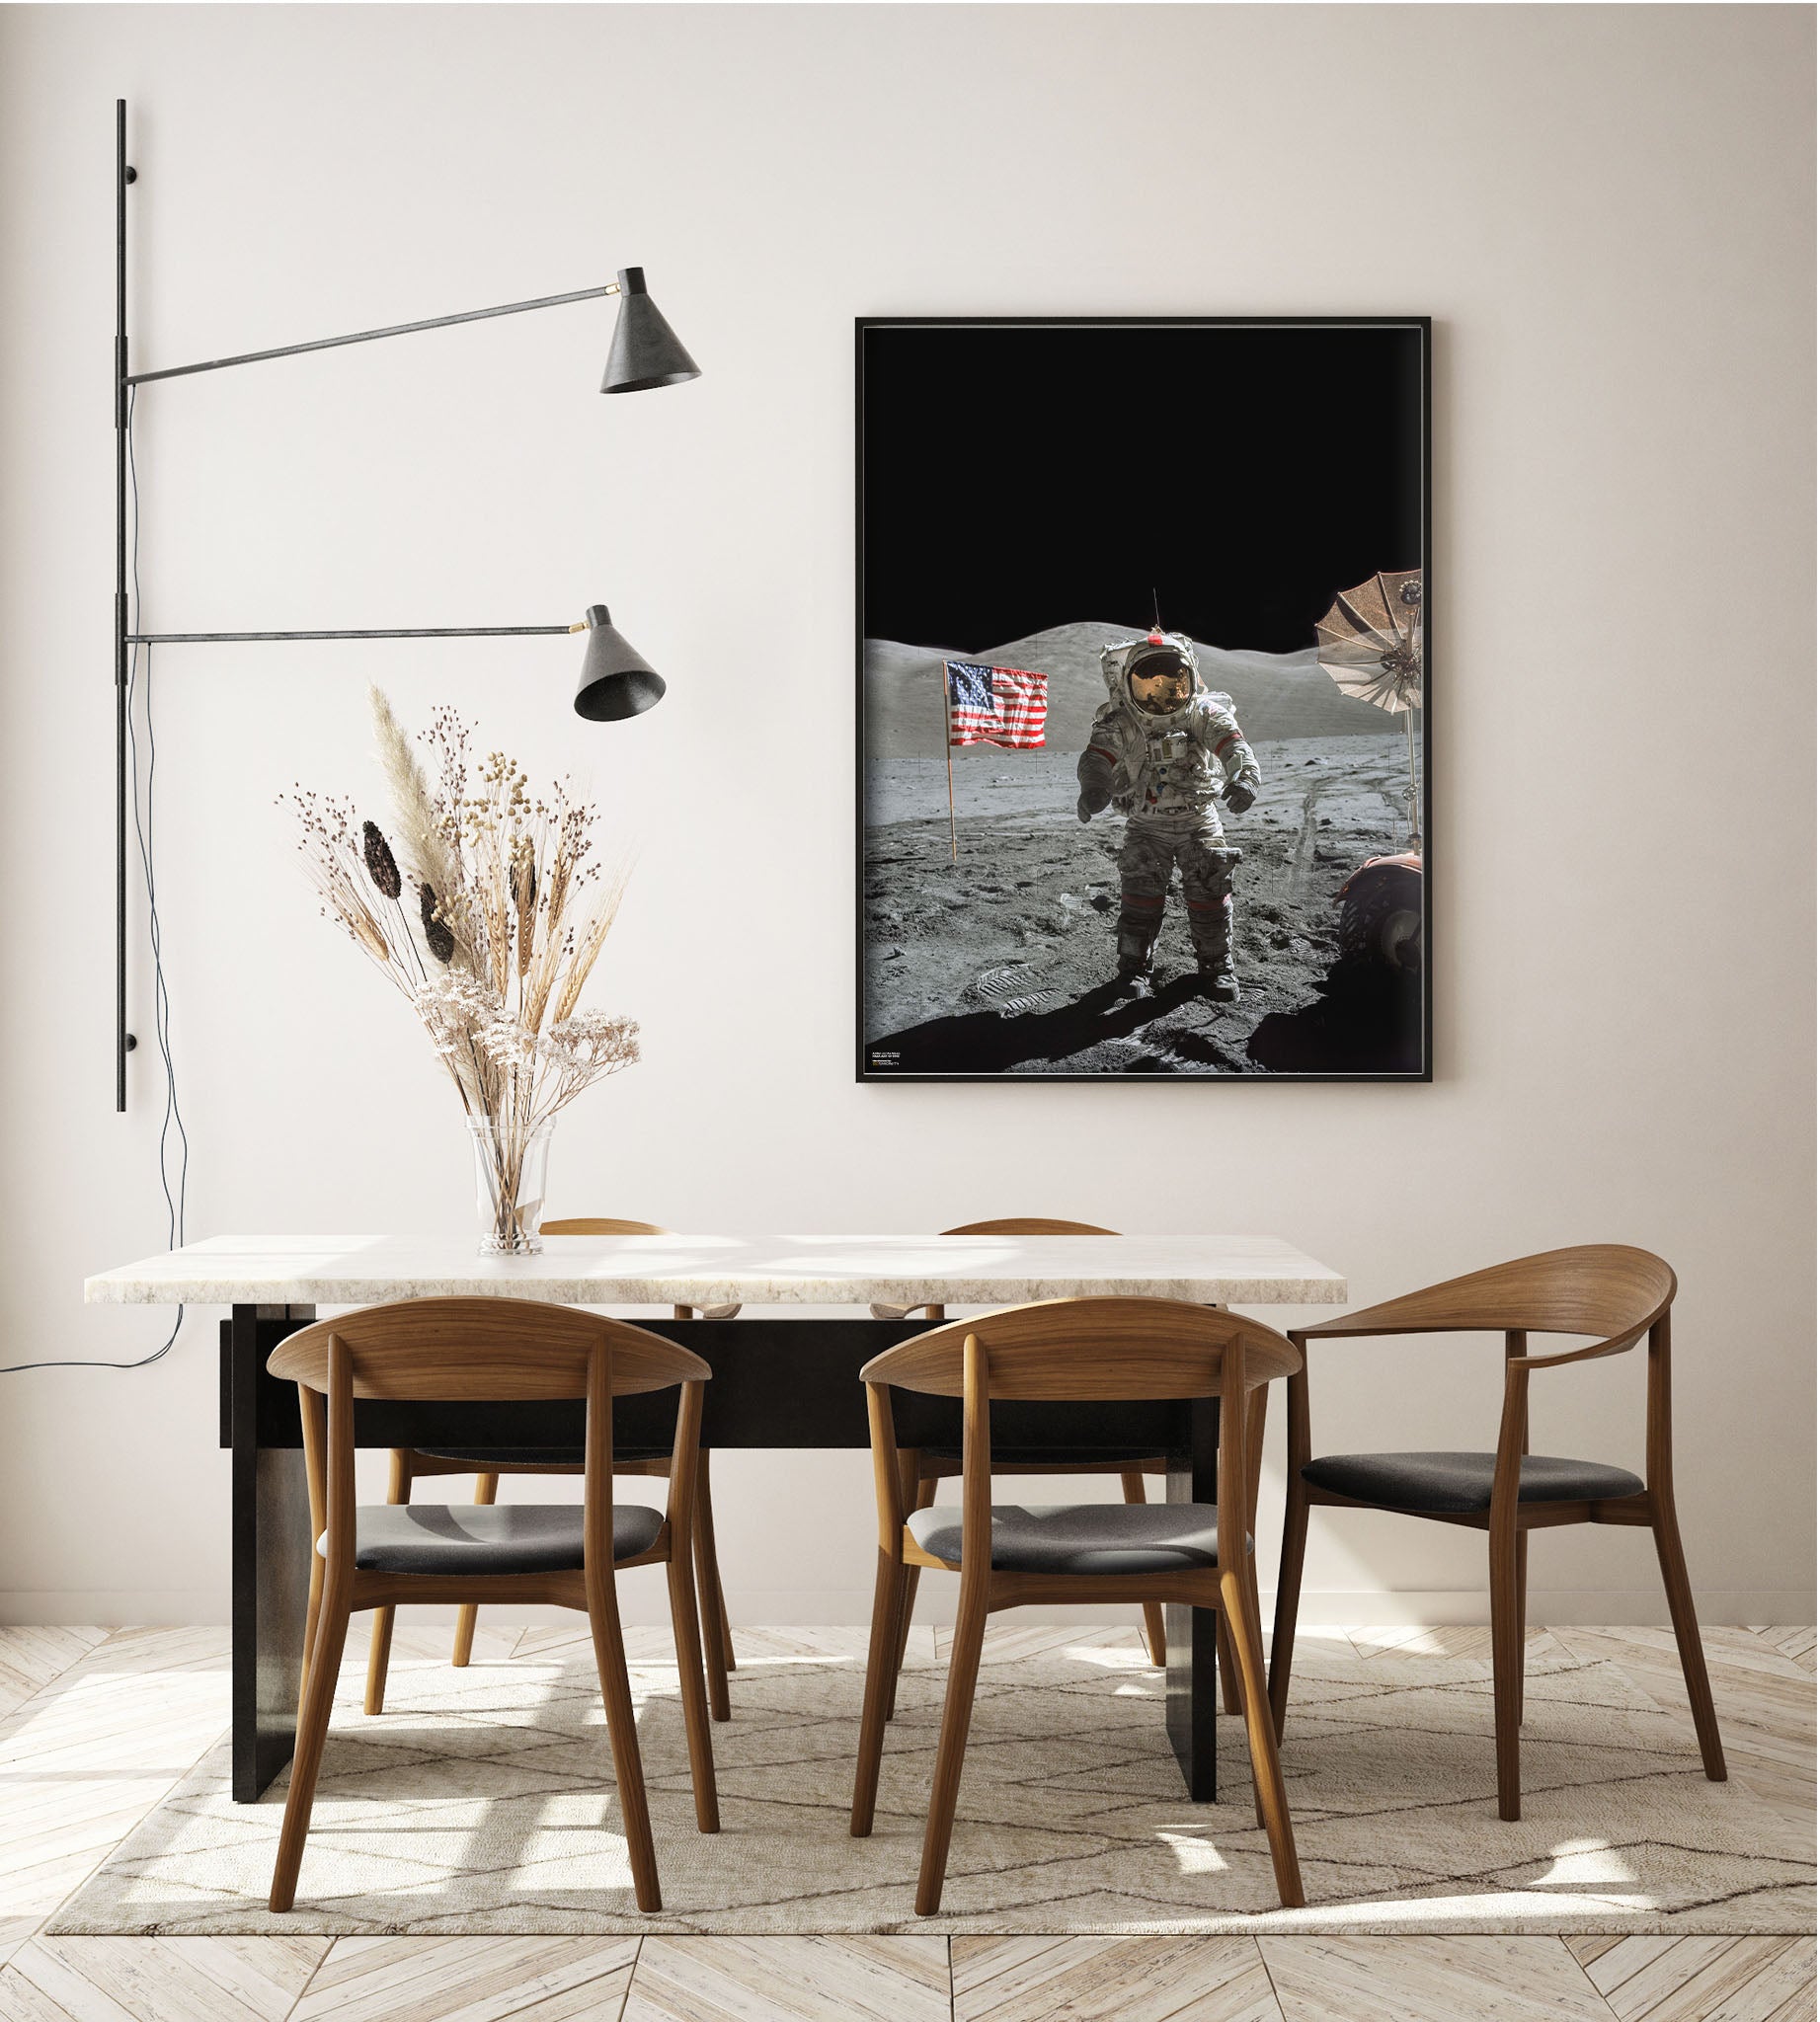 A Man on the Moon - Apollo 17